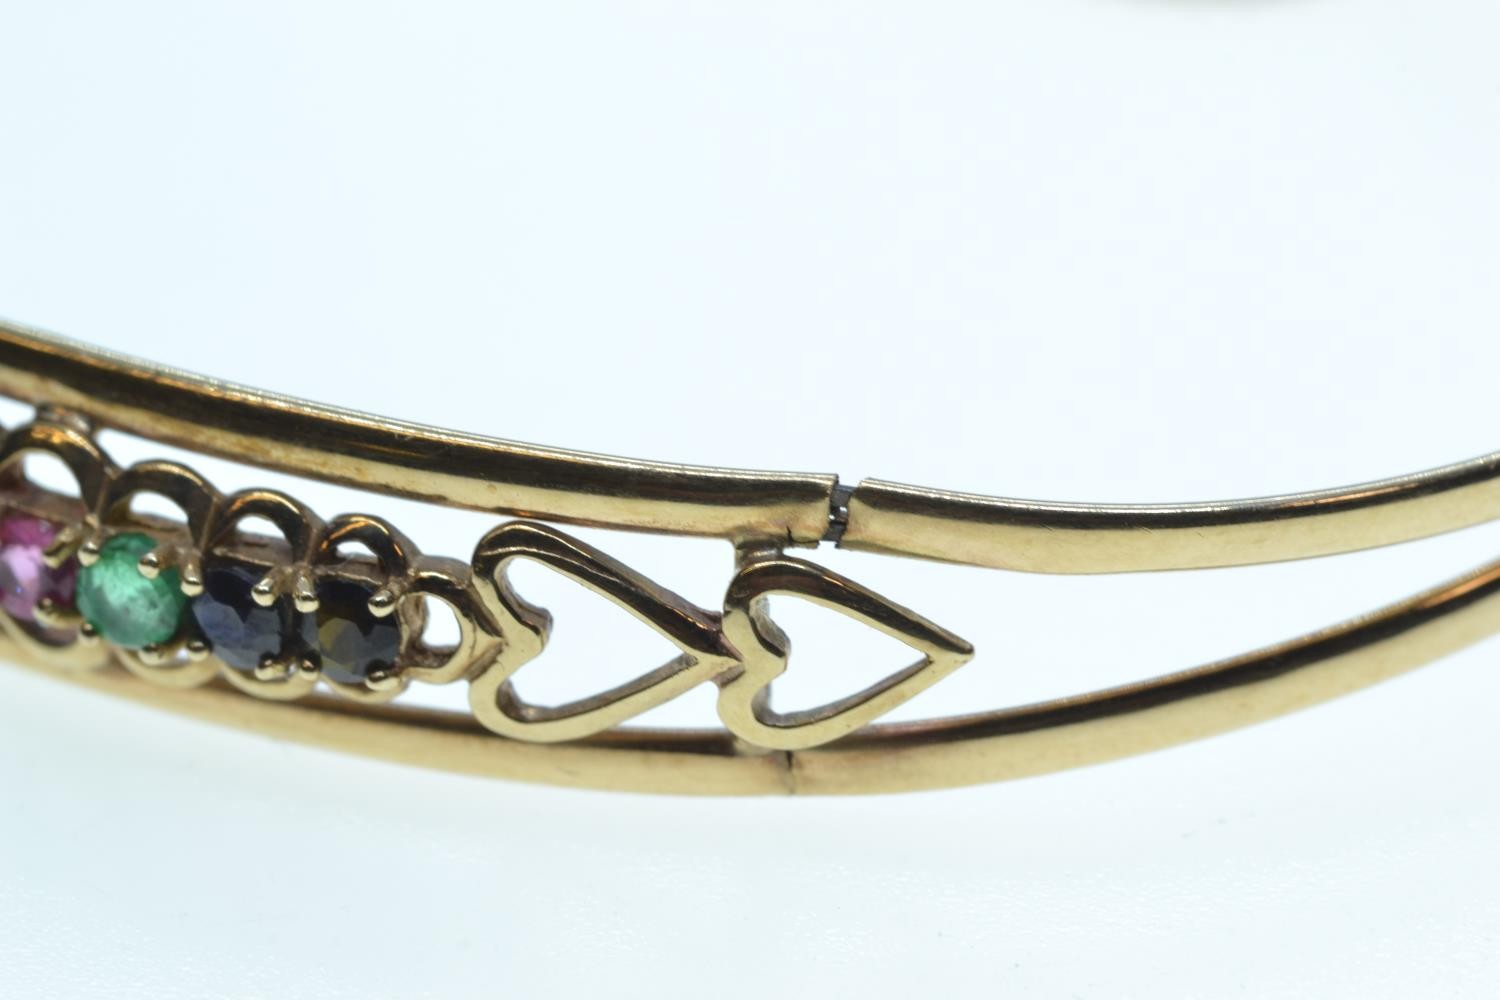 Scrap yellow metal & multi-gem set cuff bracelet, 5.89 grams  - Image 4 of 4